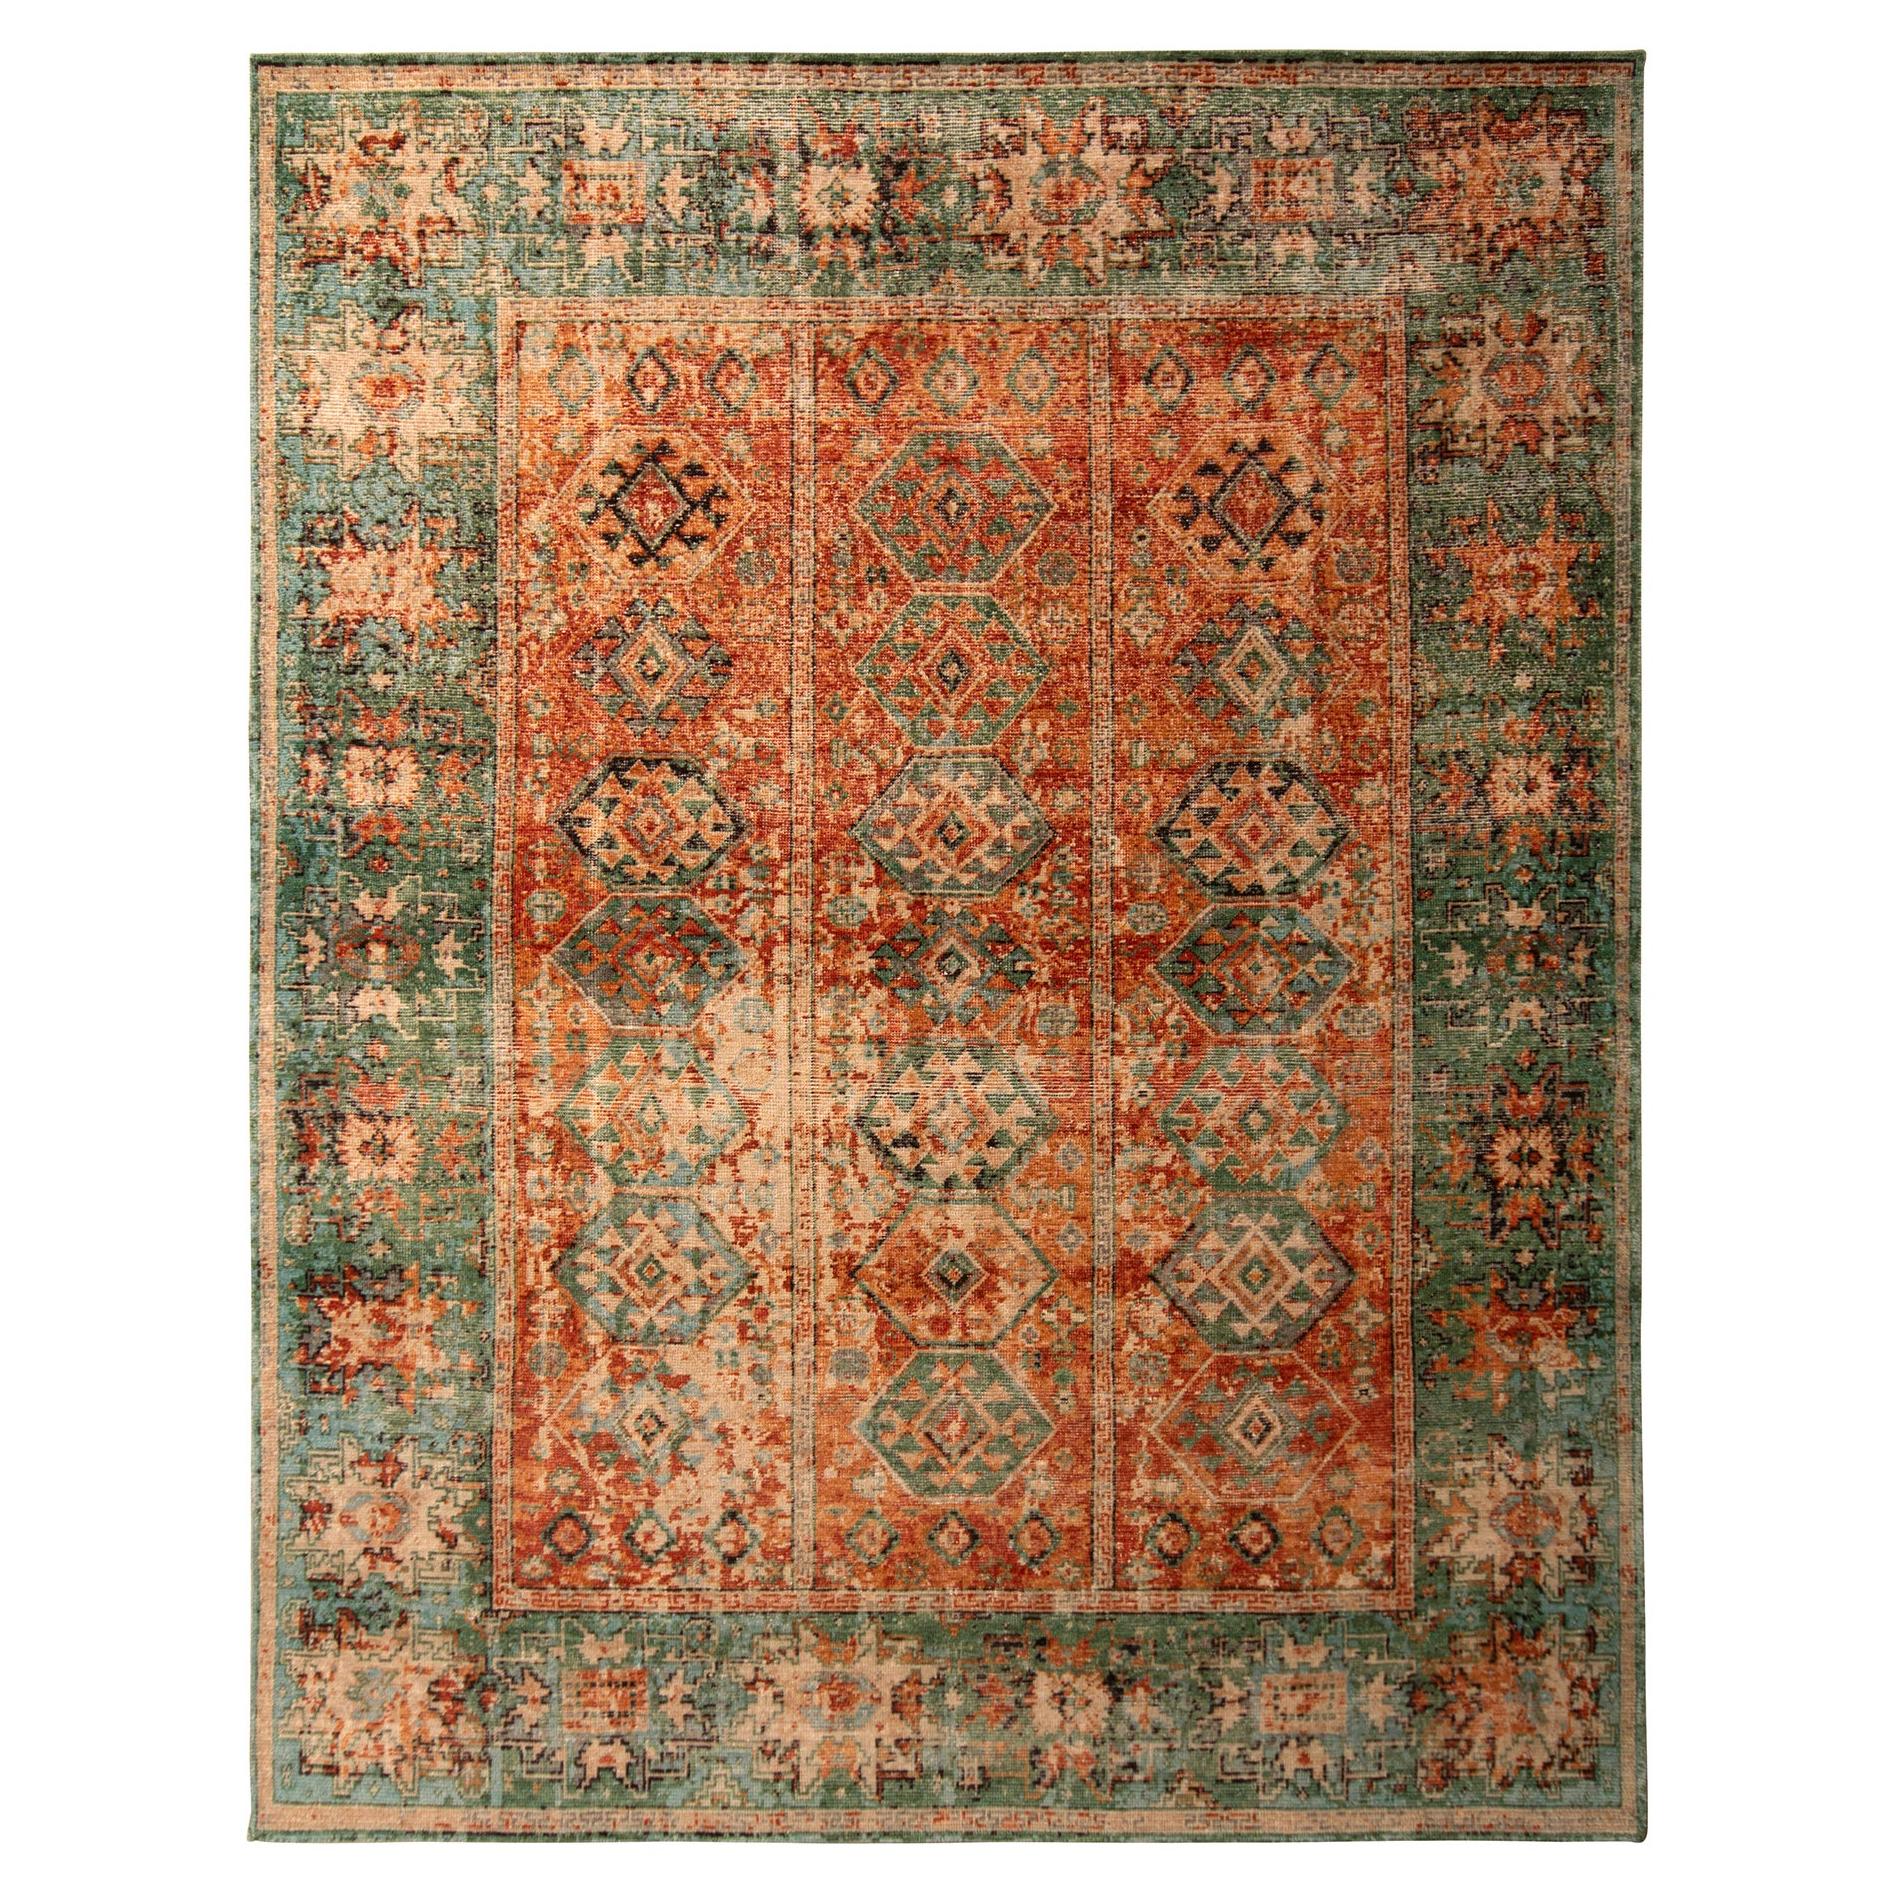 Handgeknüpfter Teppich & Kelim-Teppich mit klassischem geometrischem Muster und orange-grüner Farbe